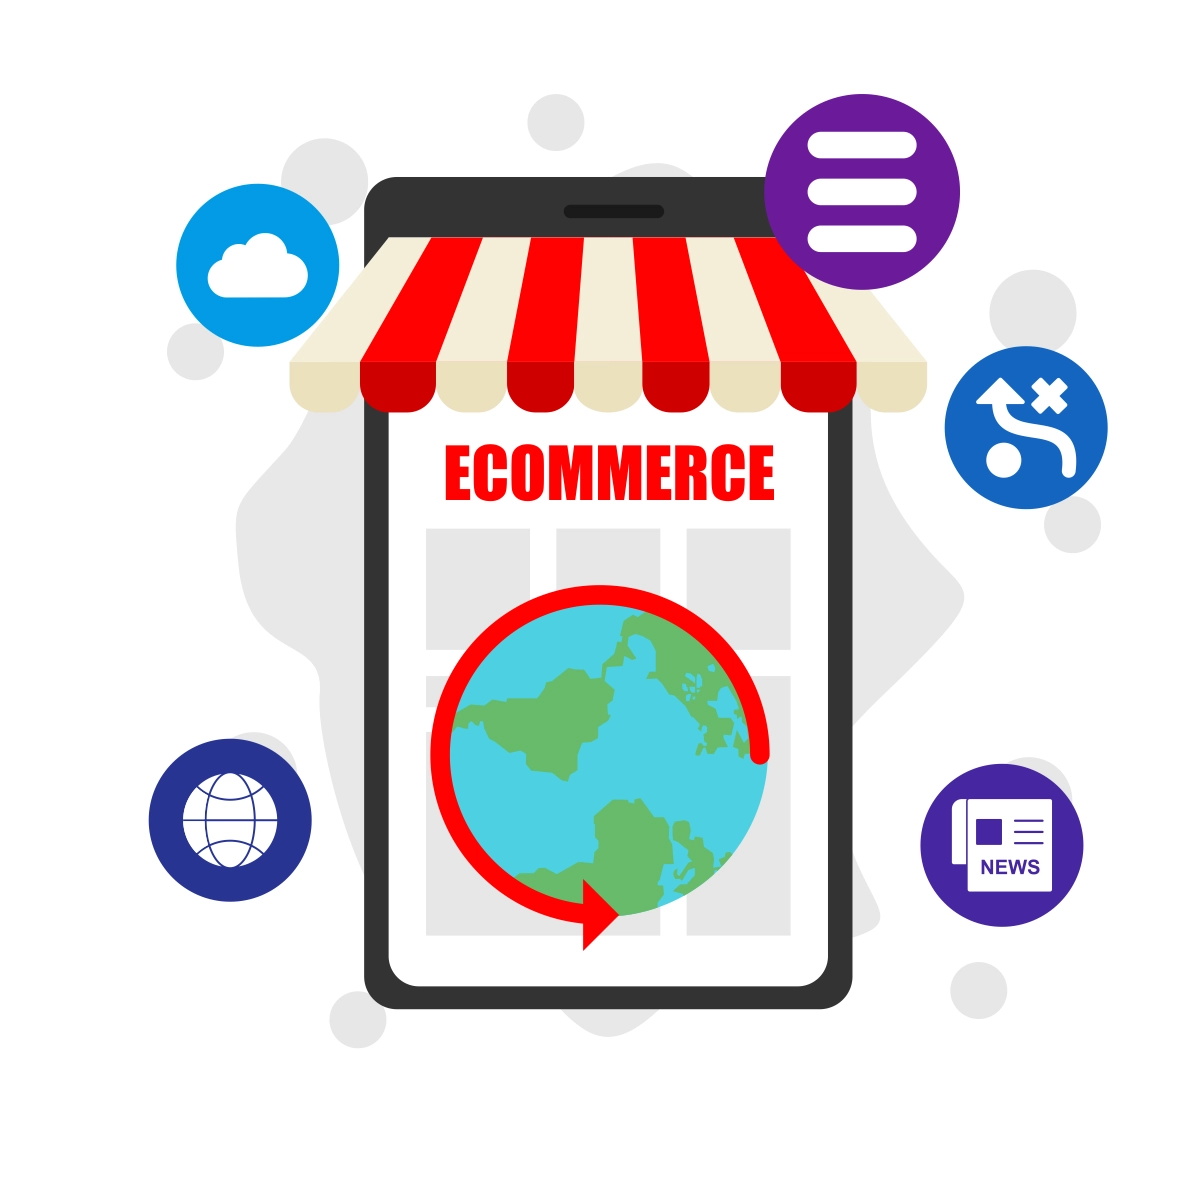 Start E-commerce